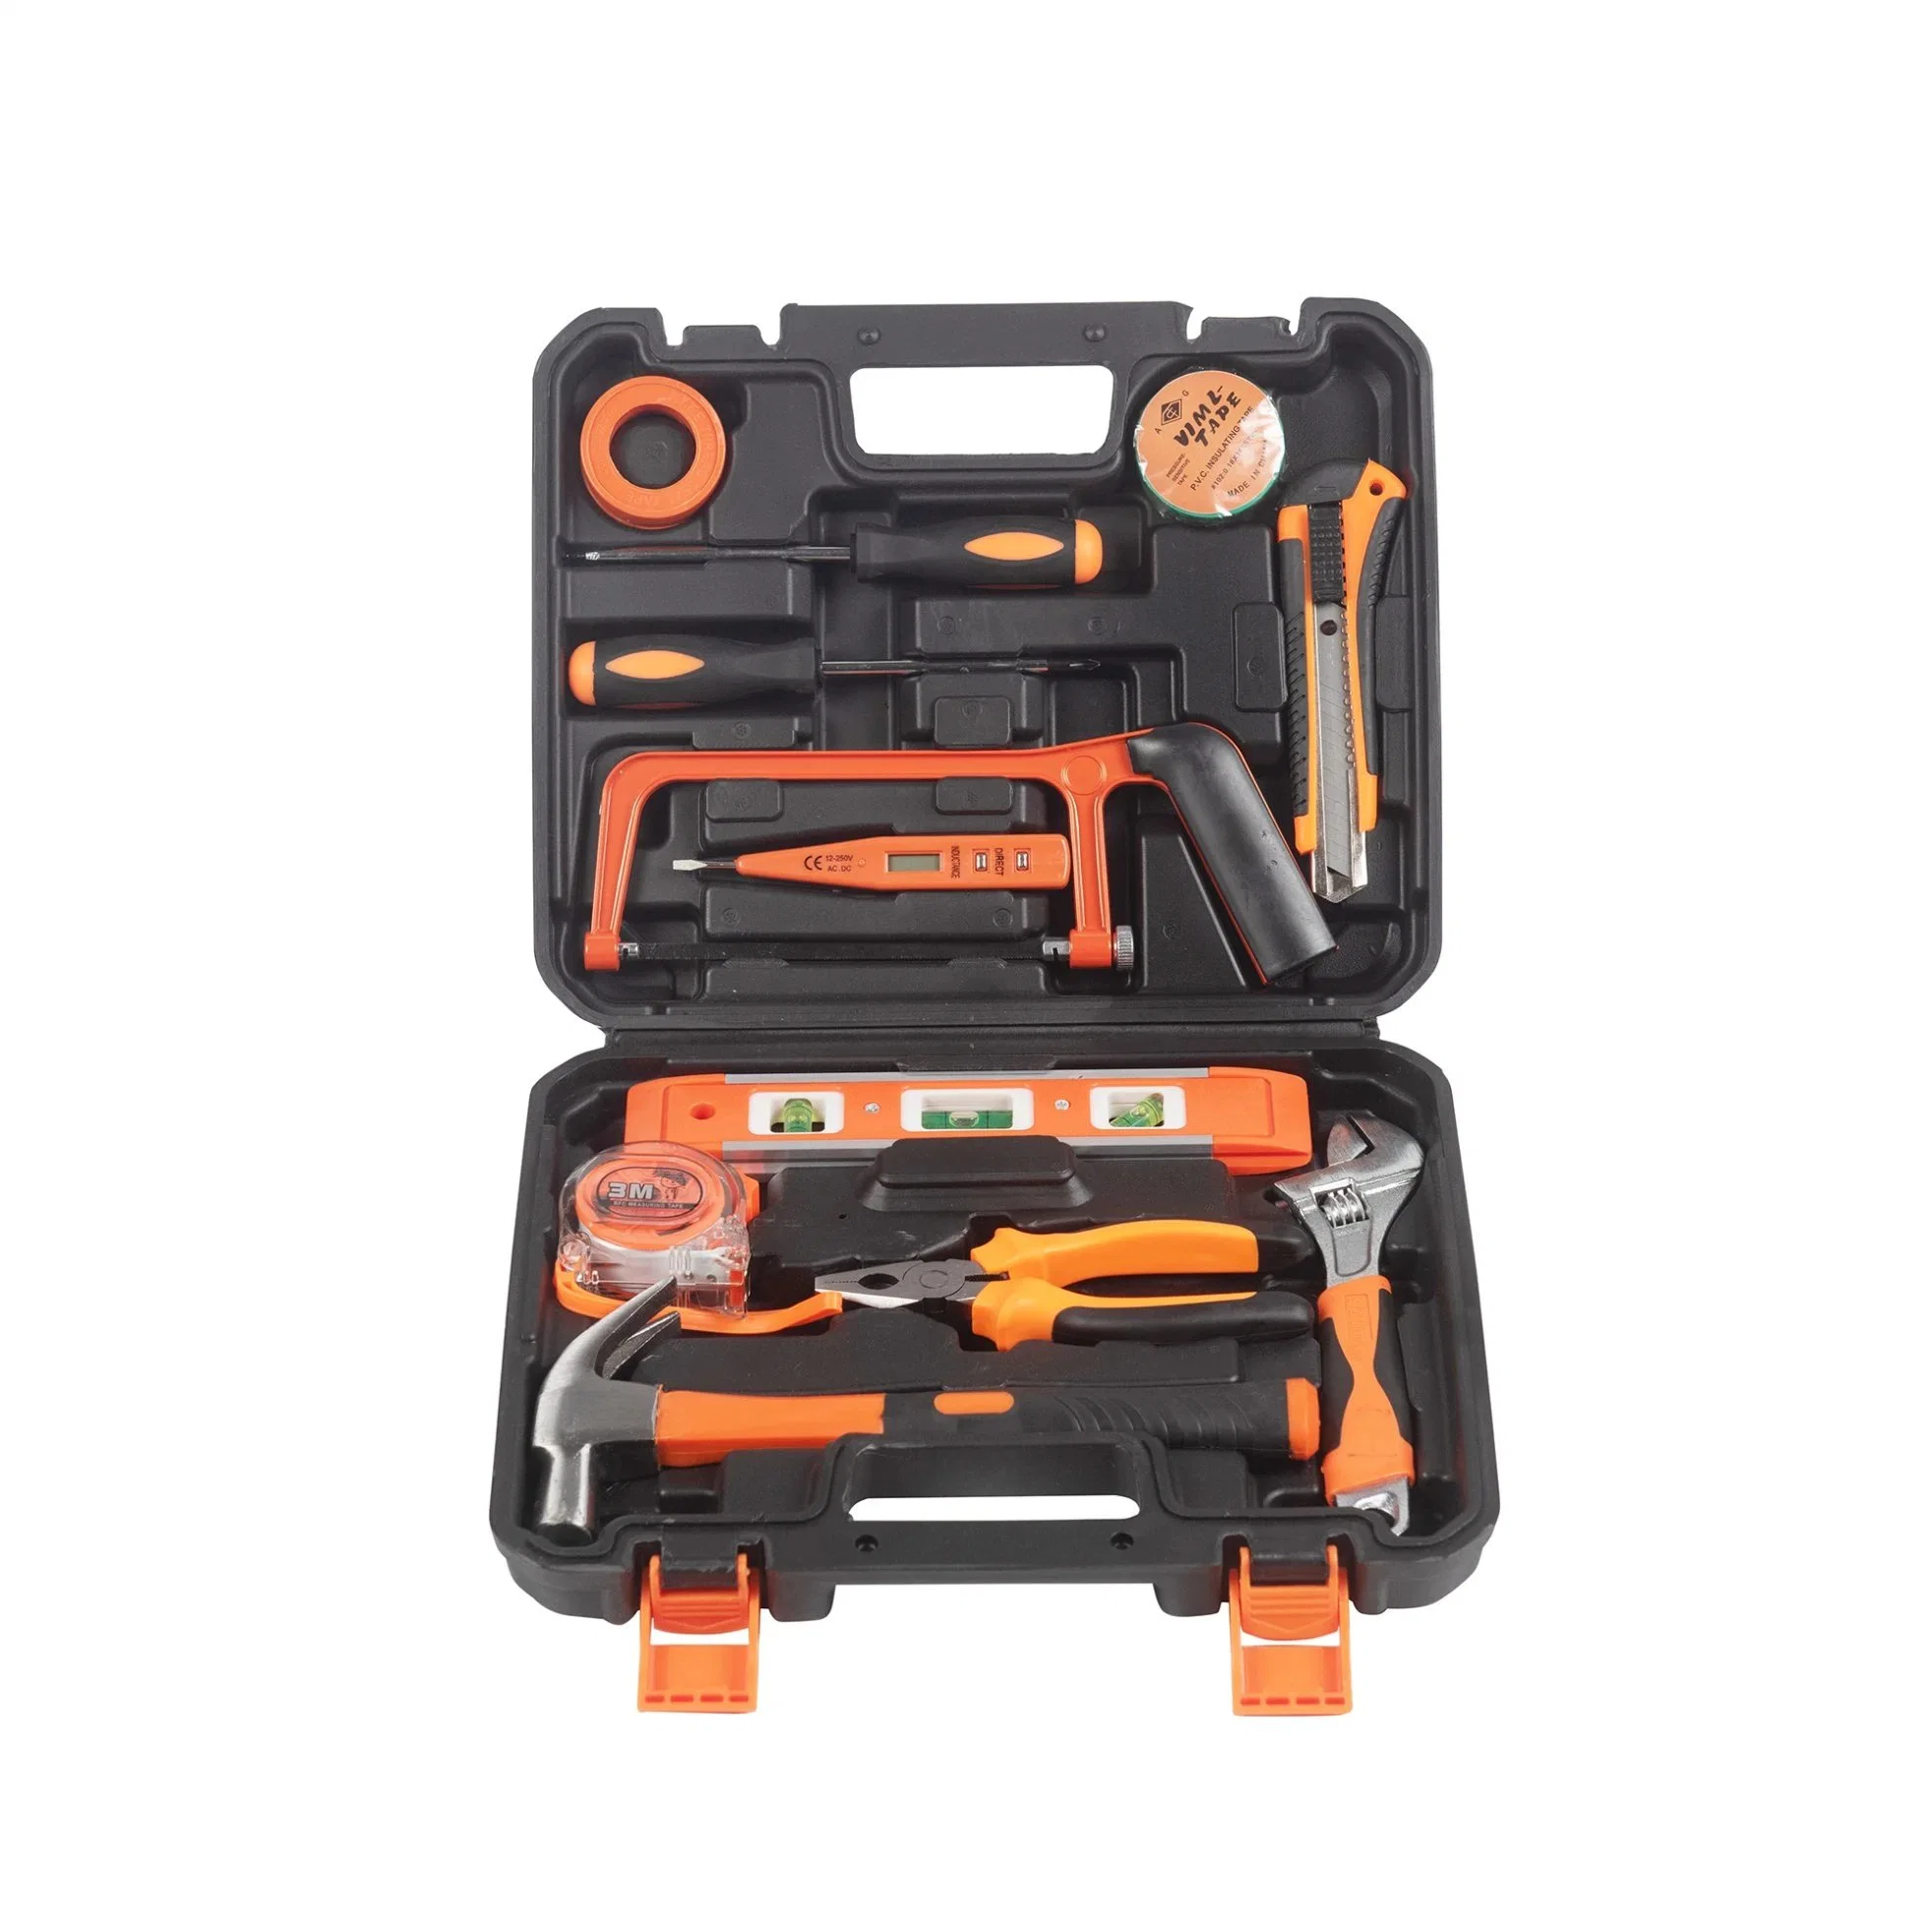 Werkzeug-Kit für Haus Portable Haushalt Reparatur Elektriker Hardware Hand Werkzeugsatz Elektrische Werkzeugkiste Werkzeugsatz